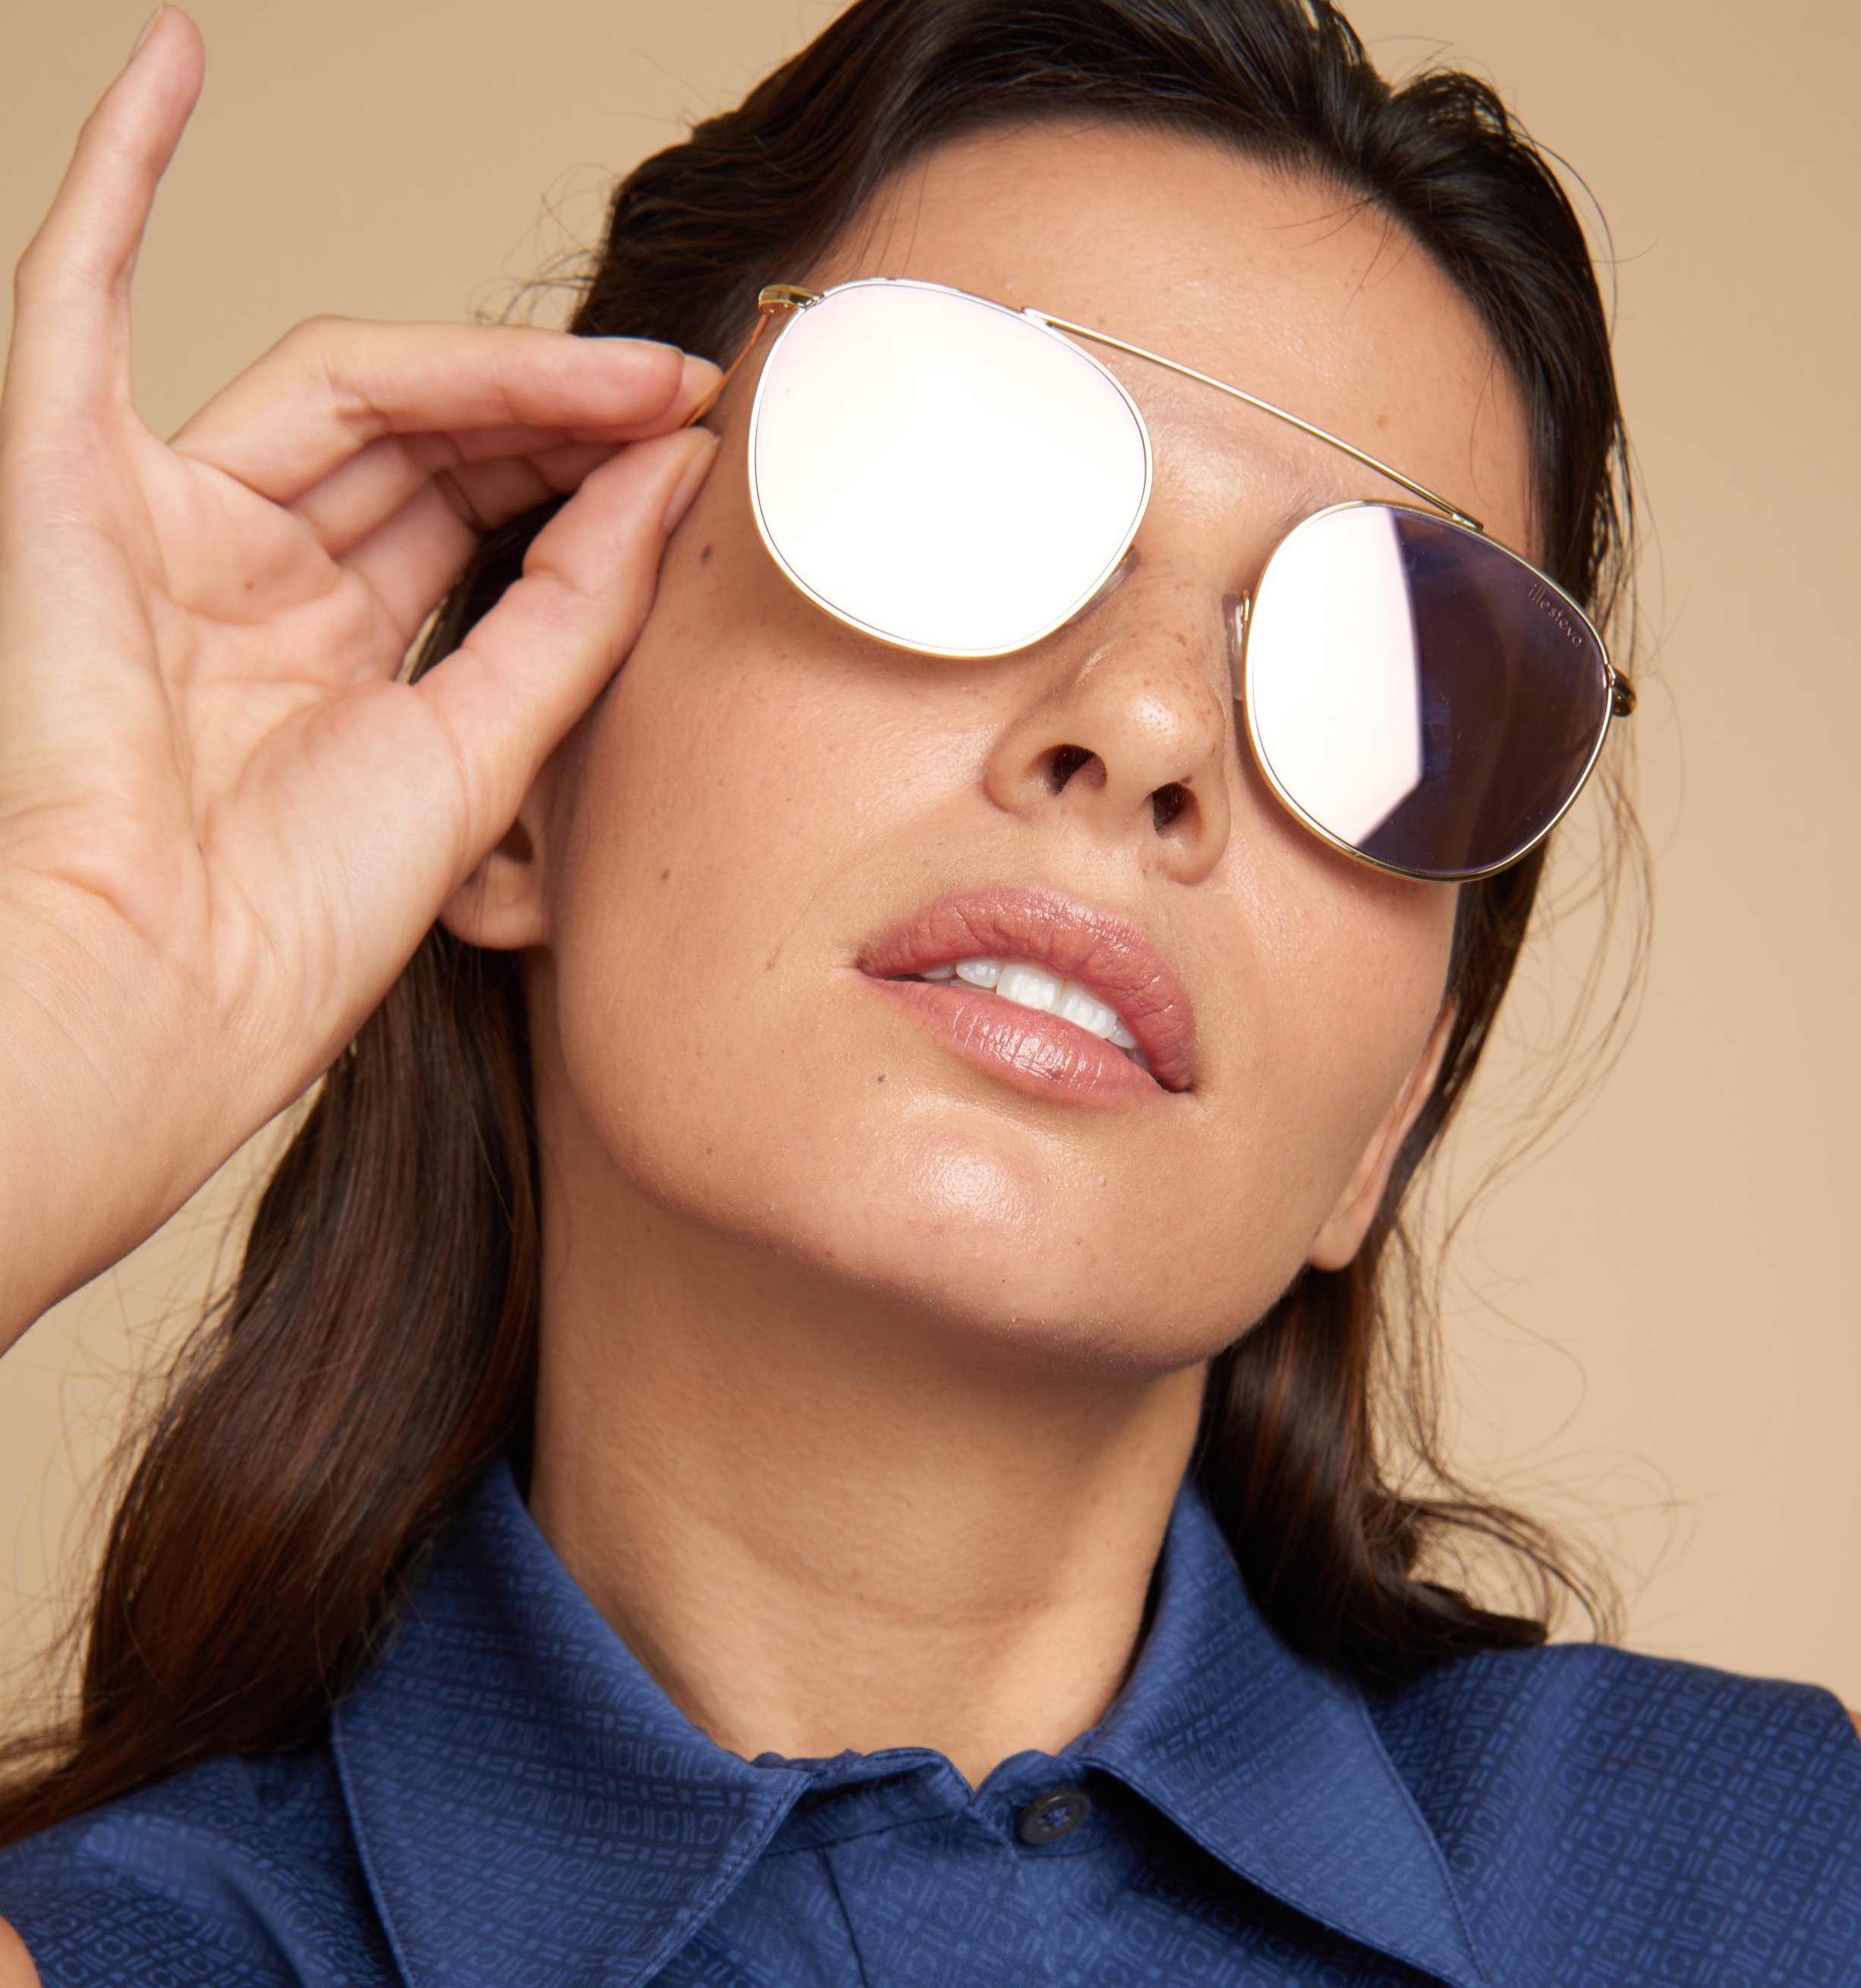 Headshot of Woman Wearing Sunglasses